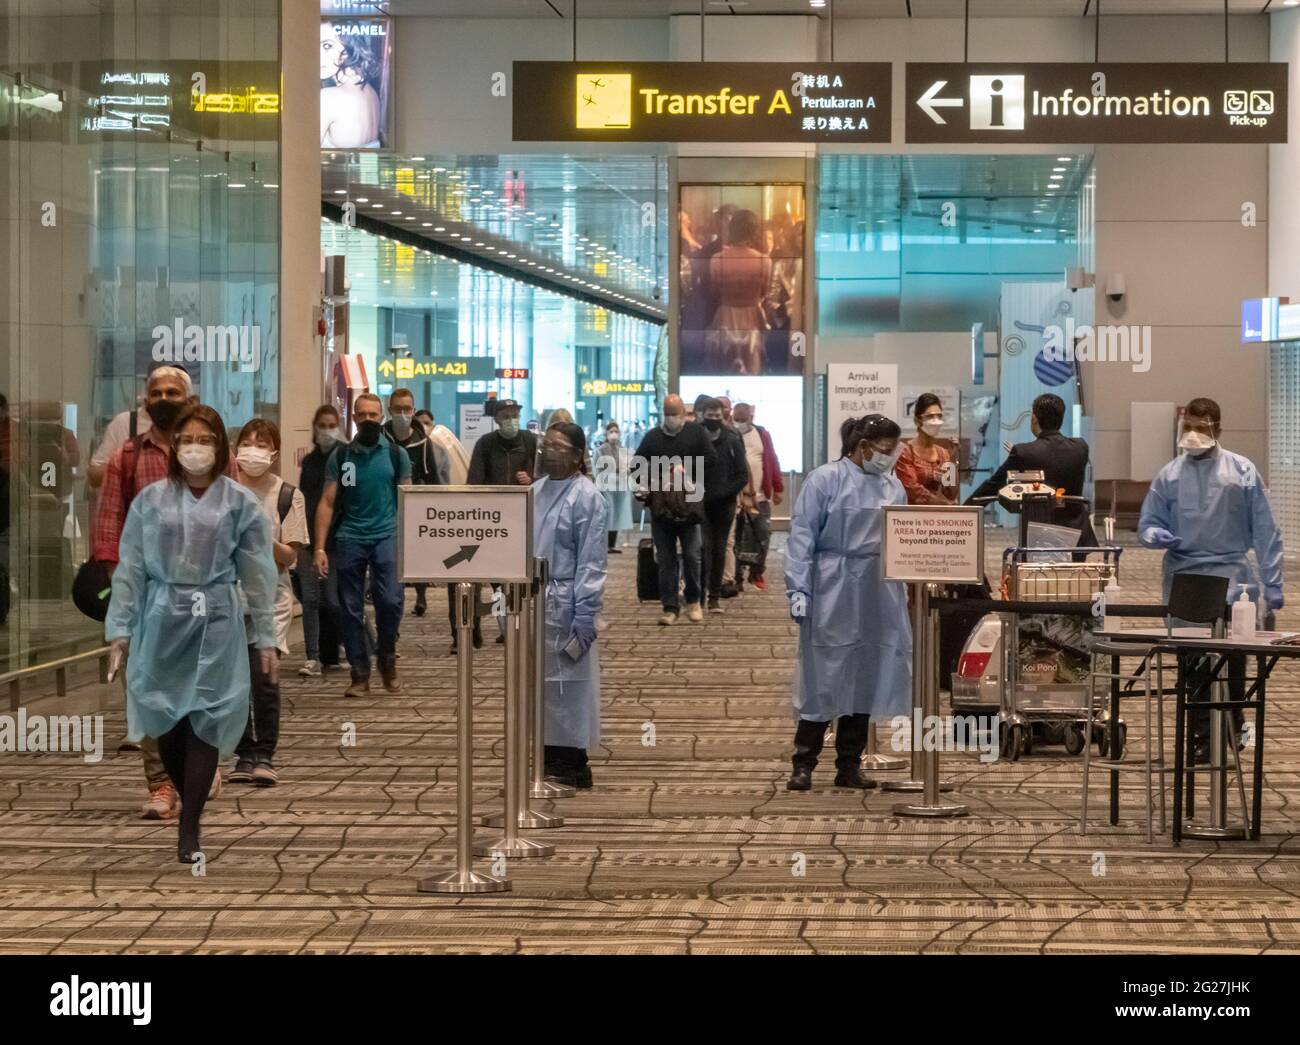 Singapour, 8 juin 2021 - les passagers sont escortés par un membre du personnel de l'aéroport (à gauche) à travers l'aéroport Changi de Singapour, tandis que d'autres membres du personnel vérifient les documents Covid-19 et les températures corporelles des passagers. Tout le personnel de l'aéroport porte des blouses de protection individuelle, des masques et des lunettes dans les terminaux d'arrivée et de départ. Avant la pandémie de Covd-19, en 2019, l'aéroport de Changi était le septième aéroport le plus occupé par le trafic international de passagers dans le monde et le troisième en Asie. Crédit : Rob Taggart/Alay Live News Banque D'Images